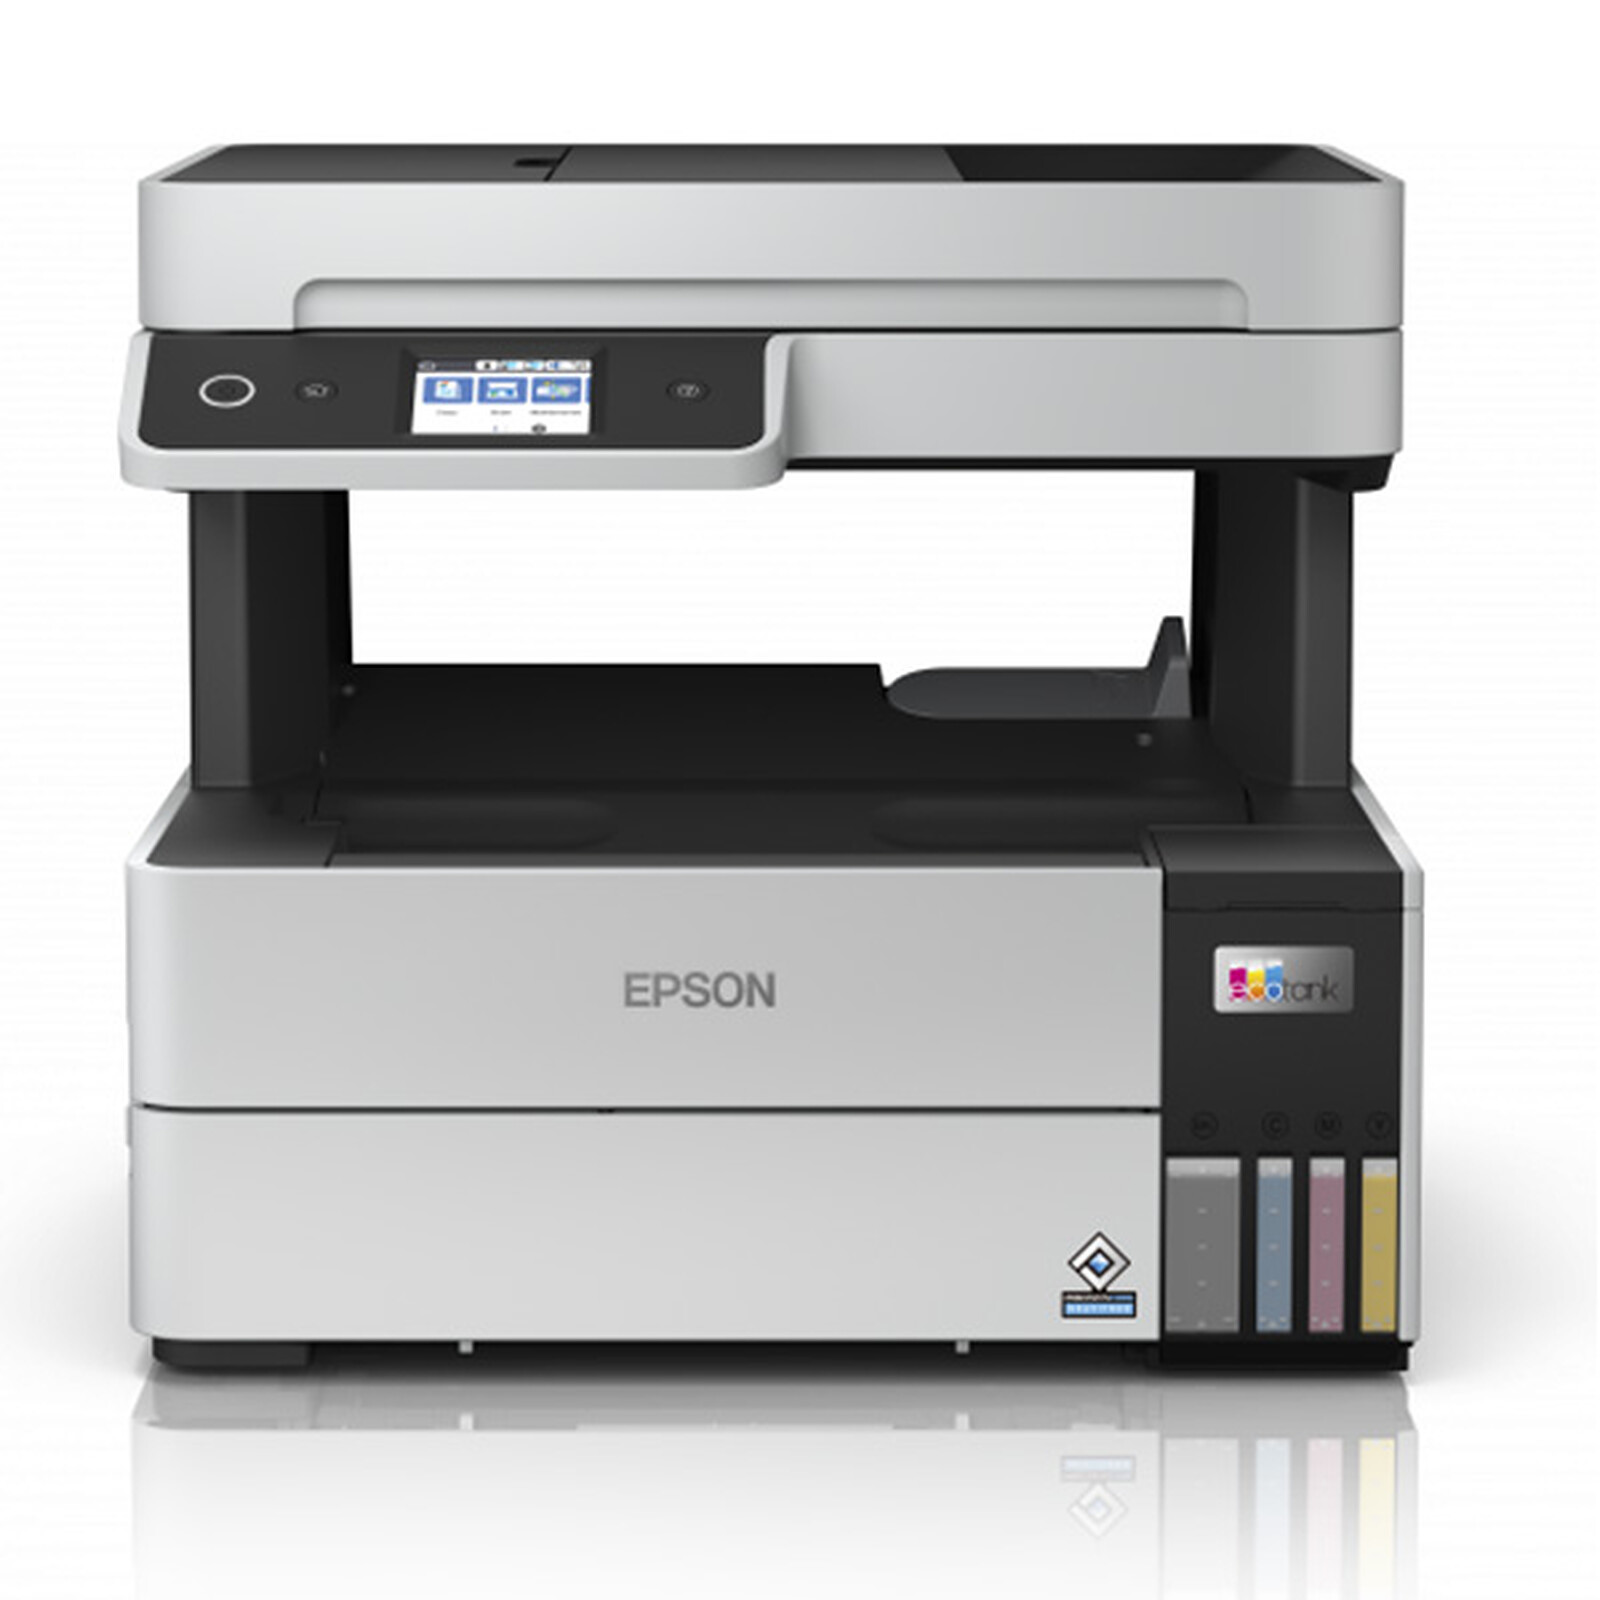 Epson EcoTank ET-2810 Print/Scan/Copy Wi-Fi Printer, Black